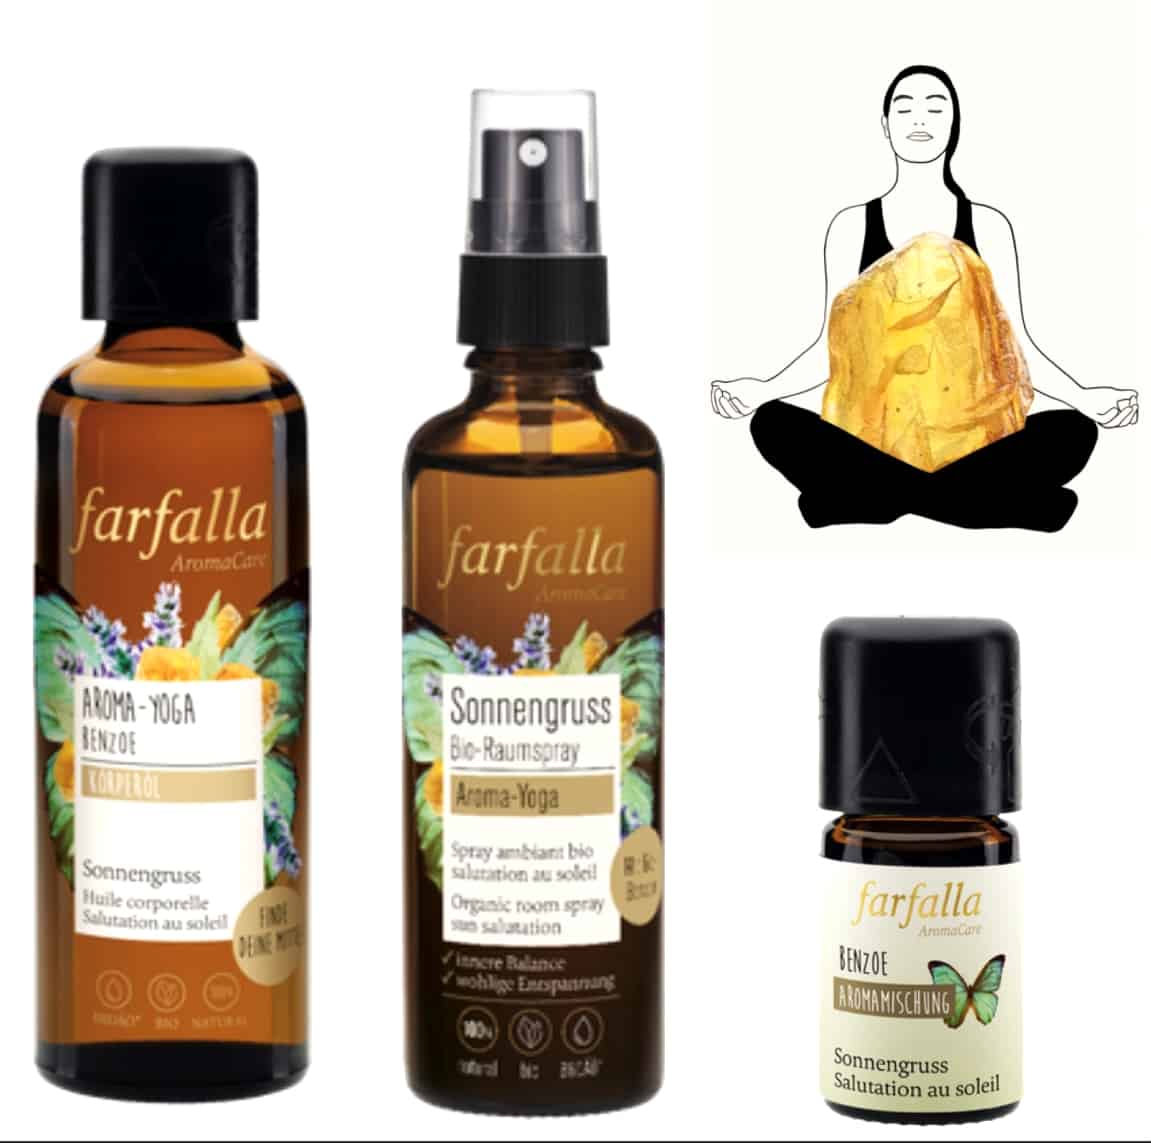 Aroma-Yoga - Farfalla Ätherische Öle - Verschiedene Kombinationen 1 SanjaNatur®